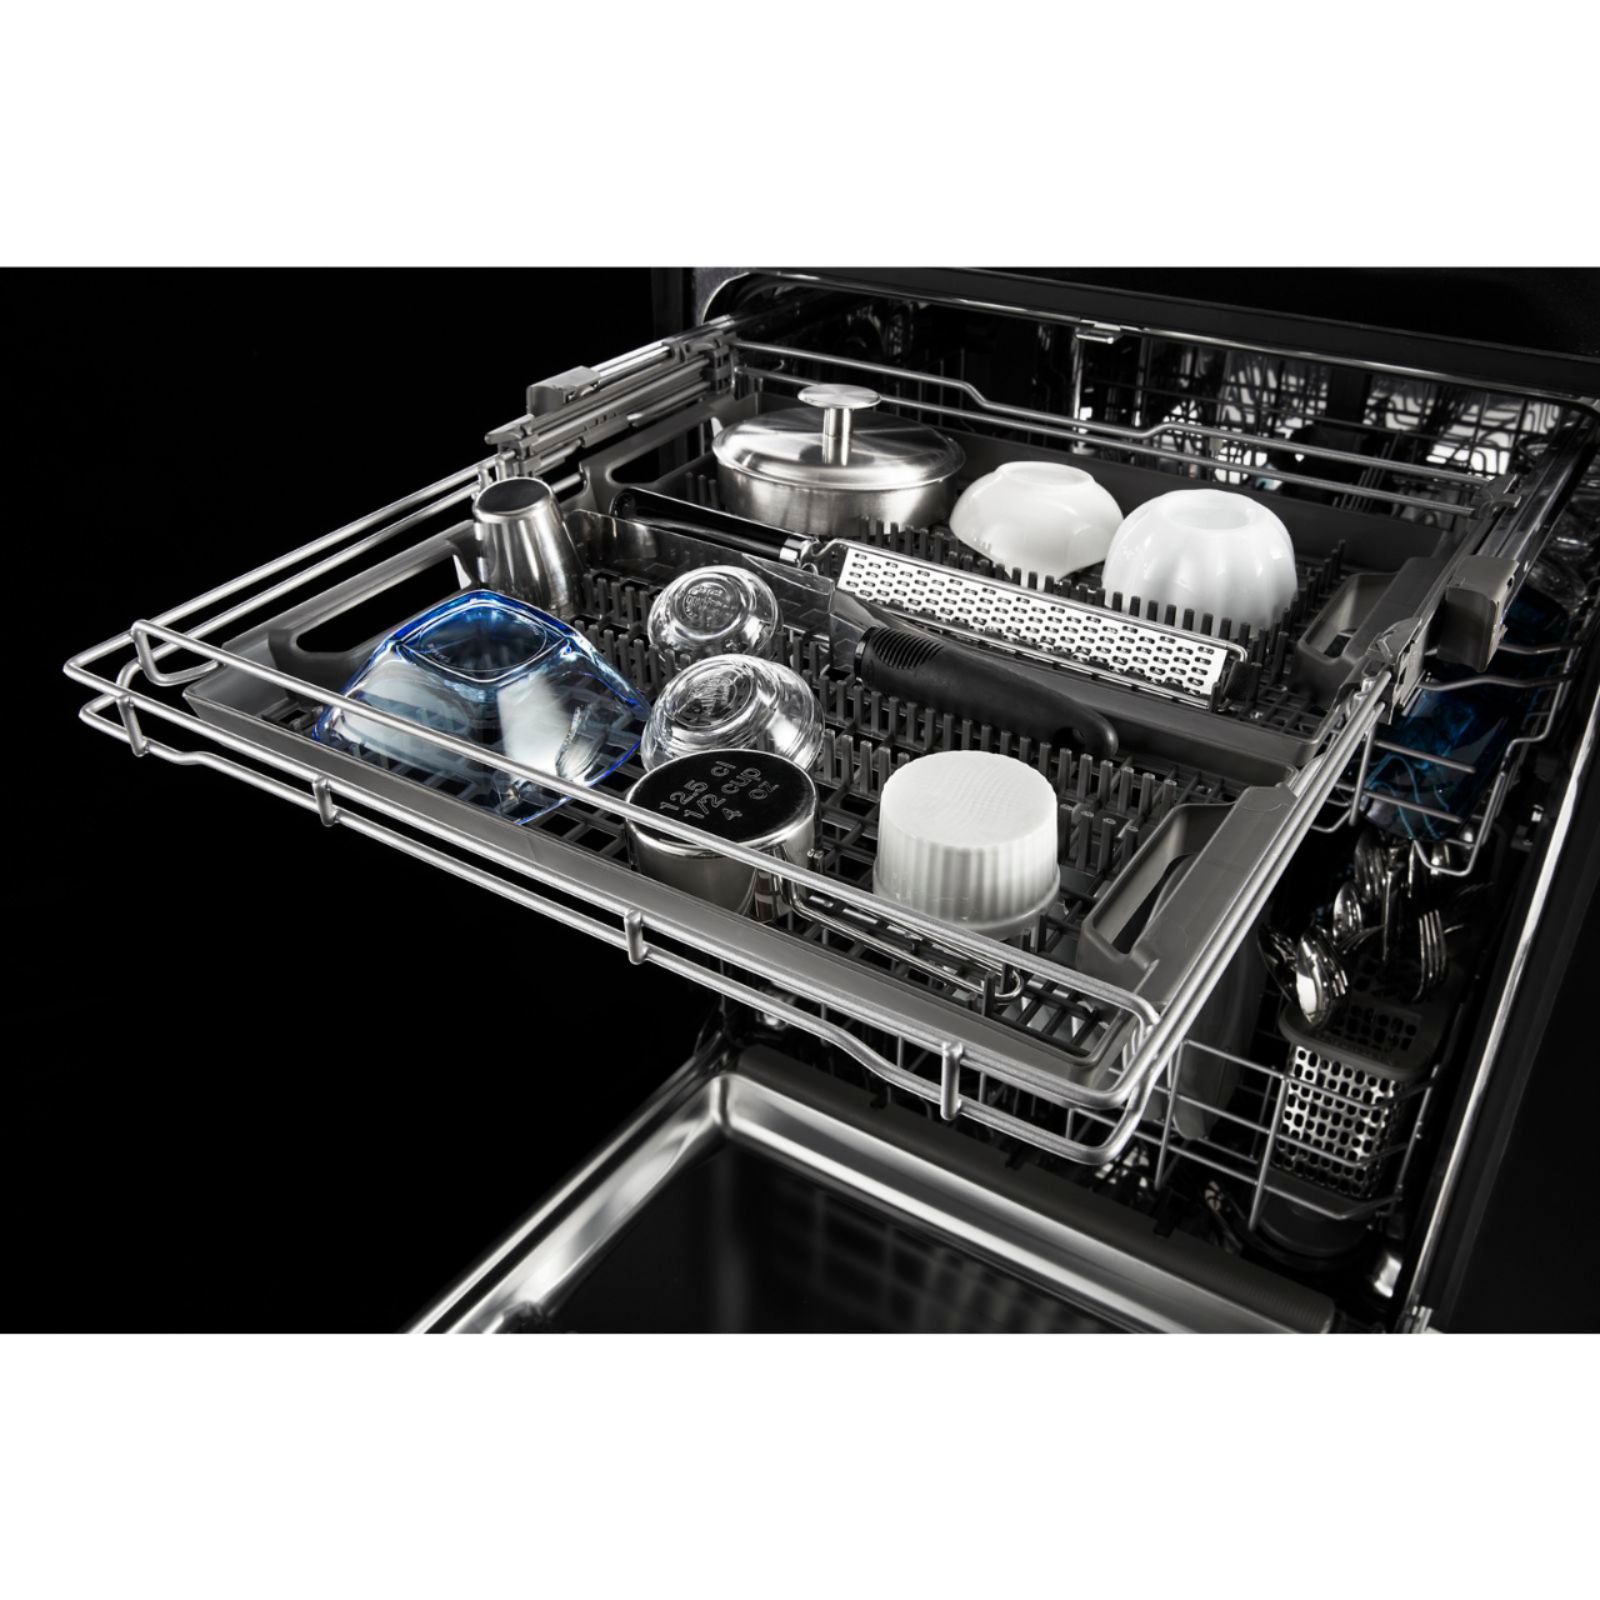 maytag dishwasher 8989